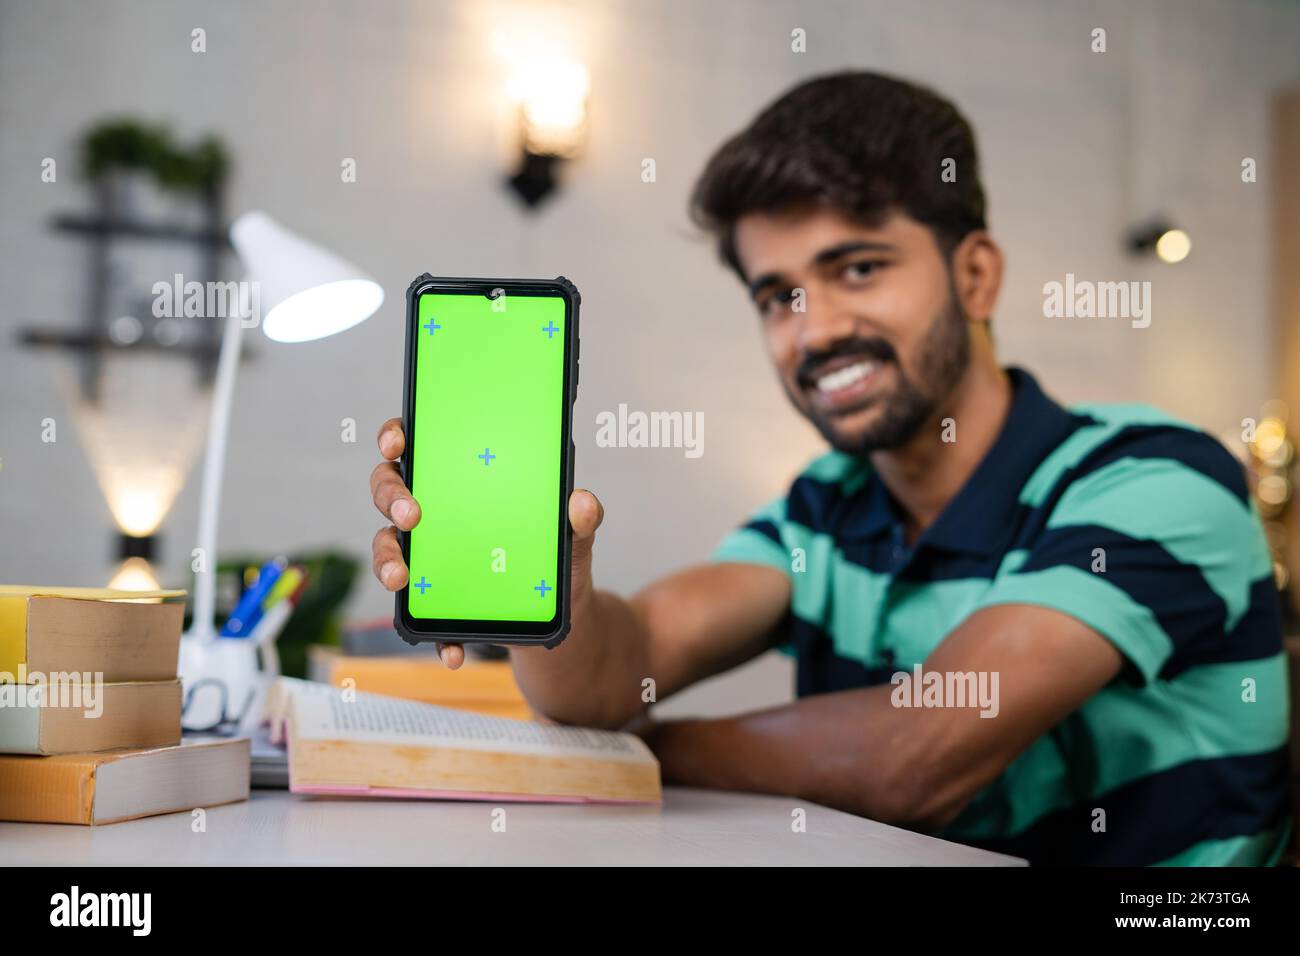 Glücklich lächelnder Student am Lerntisch mit Büchern zeigen Greenscreen-Handy durch Blick auf Kamera - Konzept der App-Förderung, Online-Buchung und Stockfoto